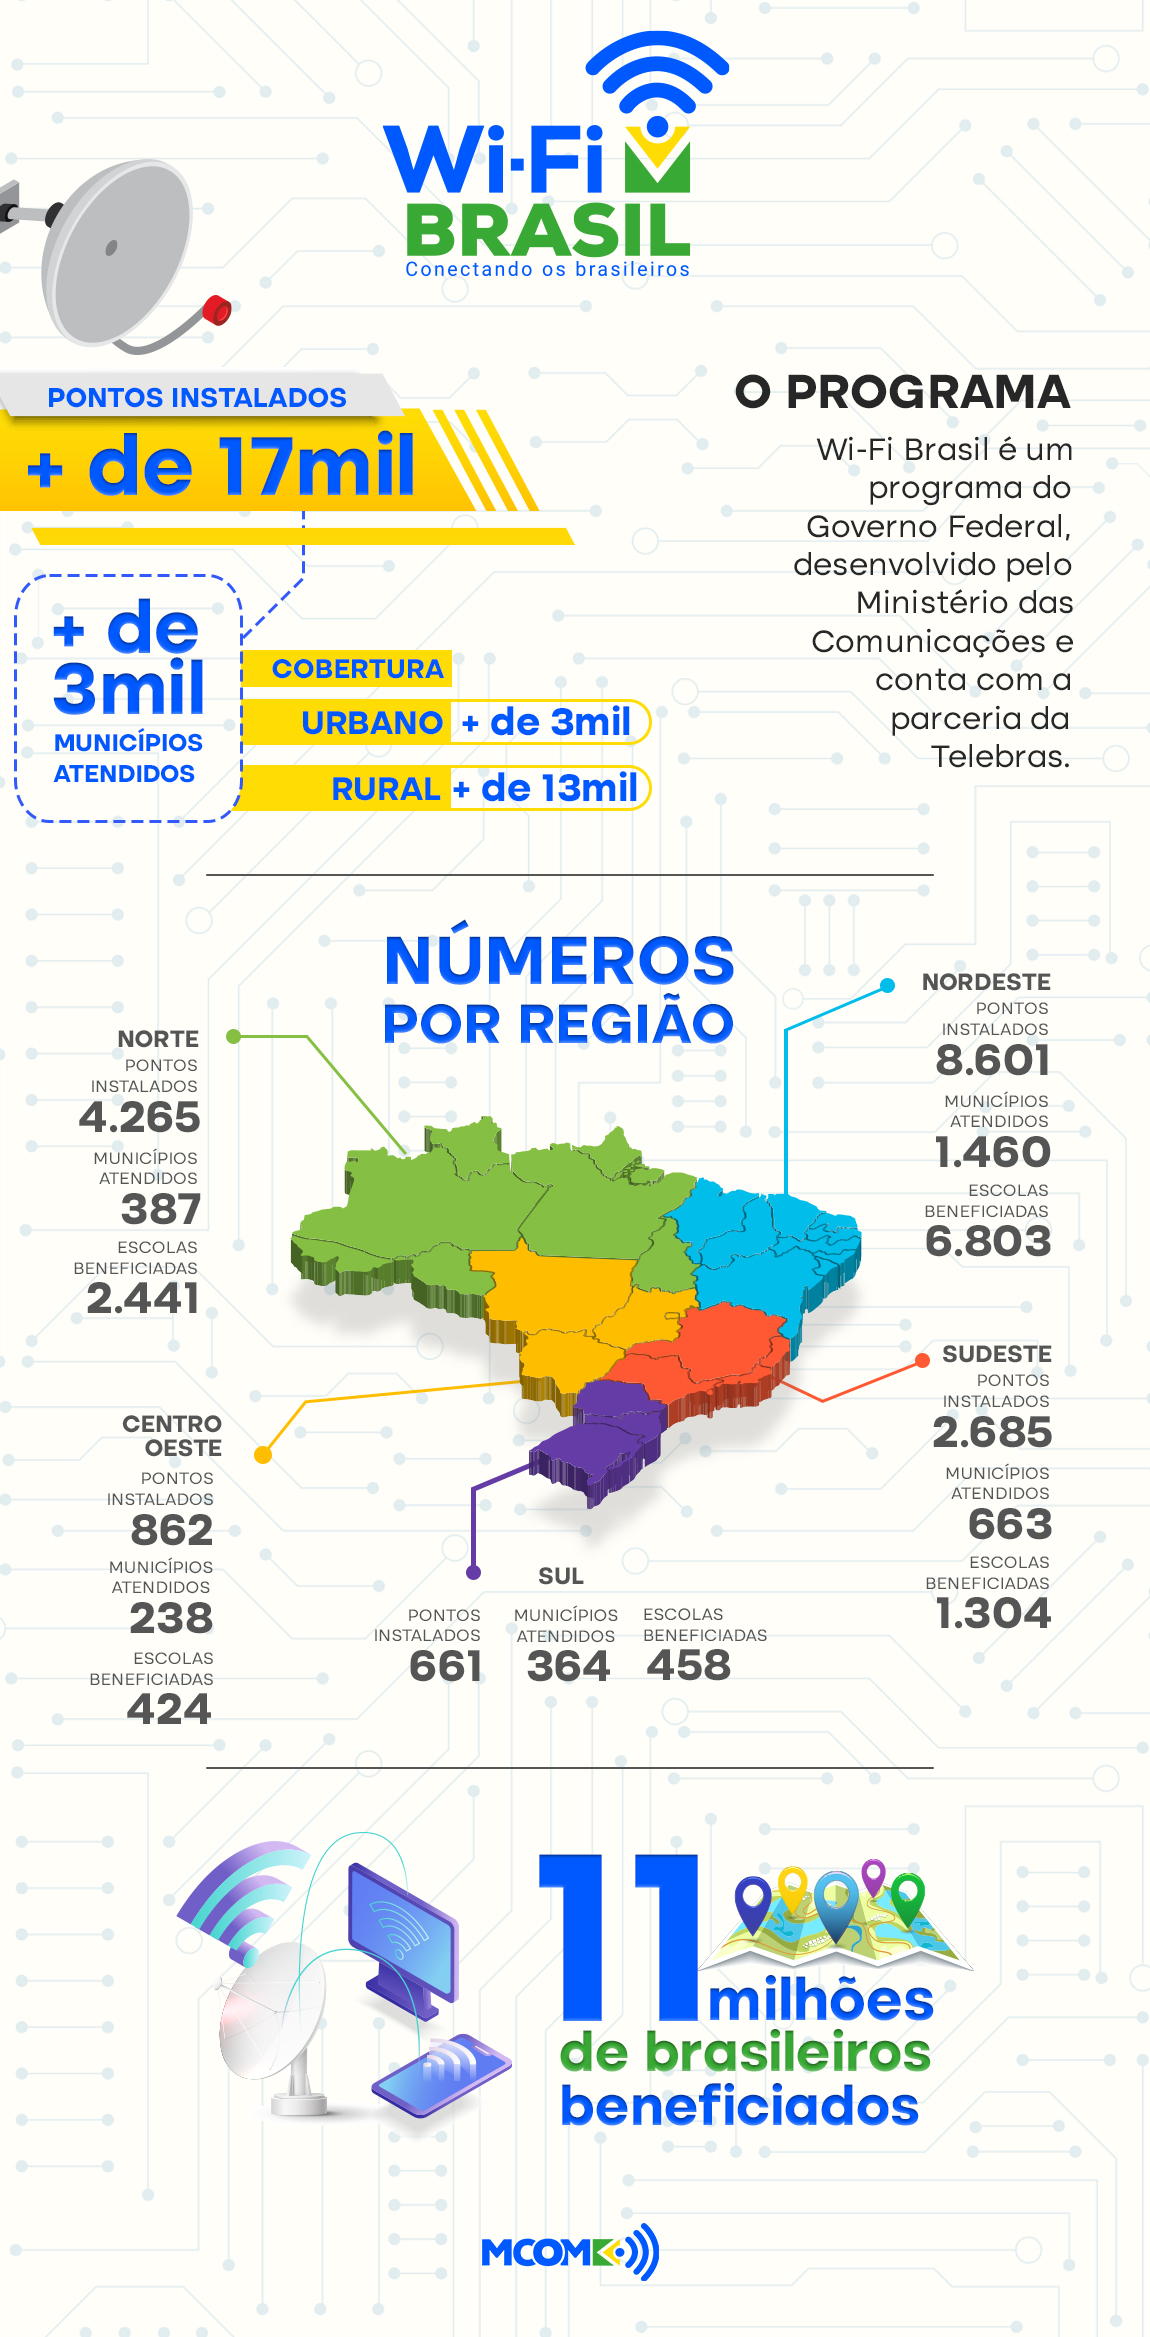 Mais de 1,2 mil áreas isoladas terão mais acesso à internet na Região Sul —  Ministério das Comunicações